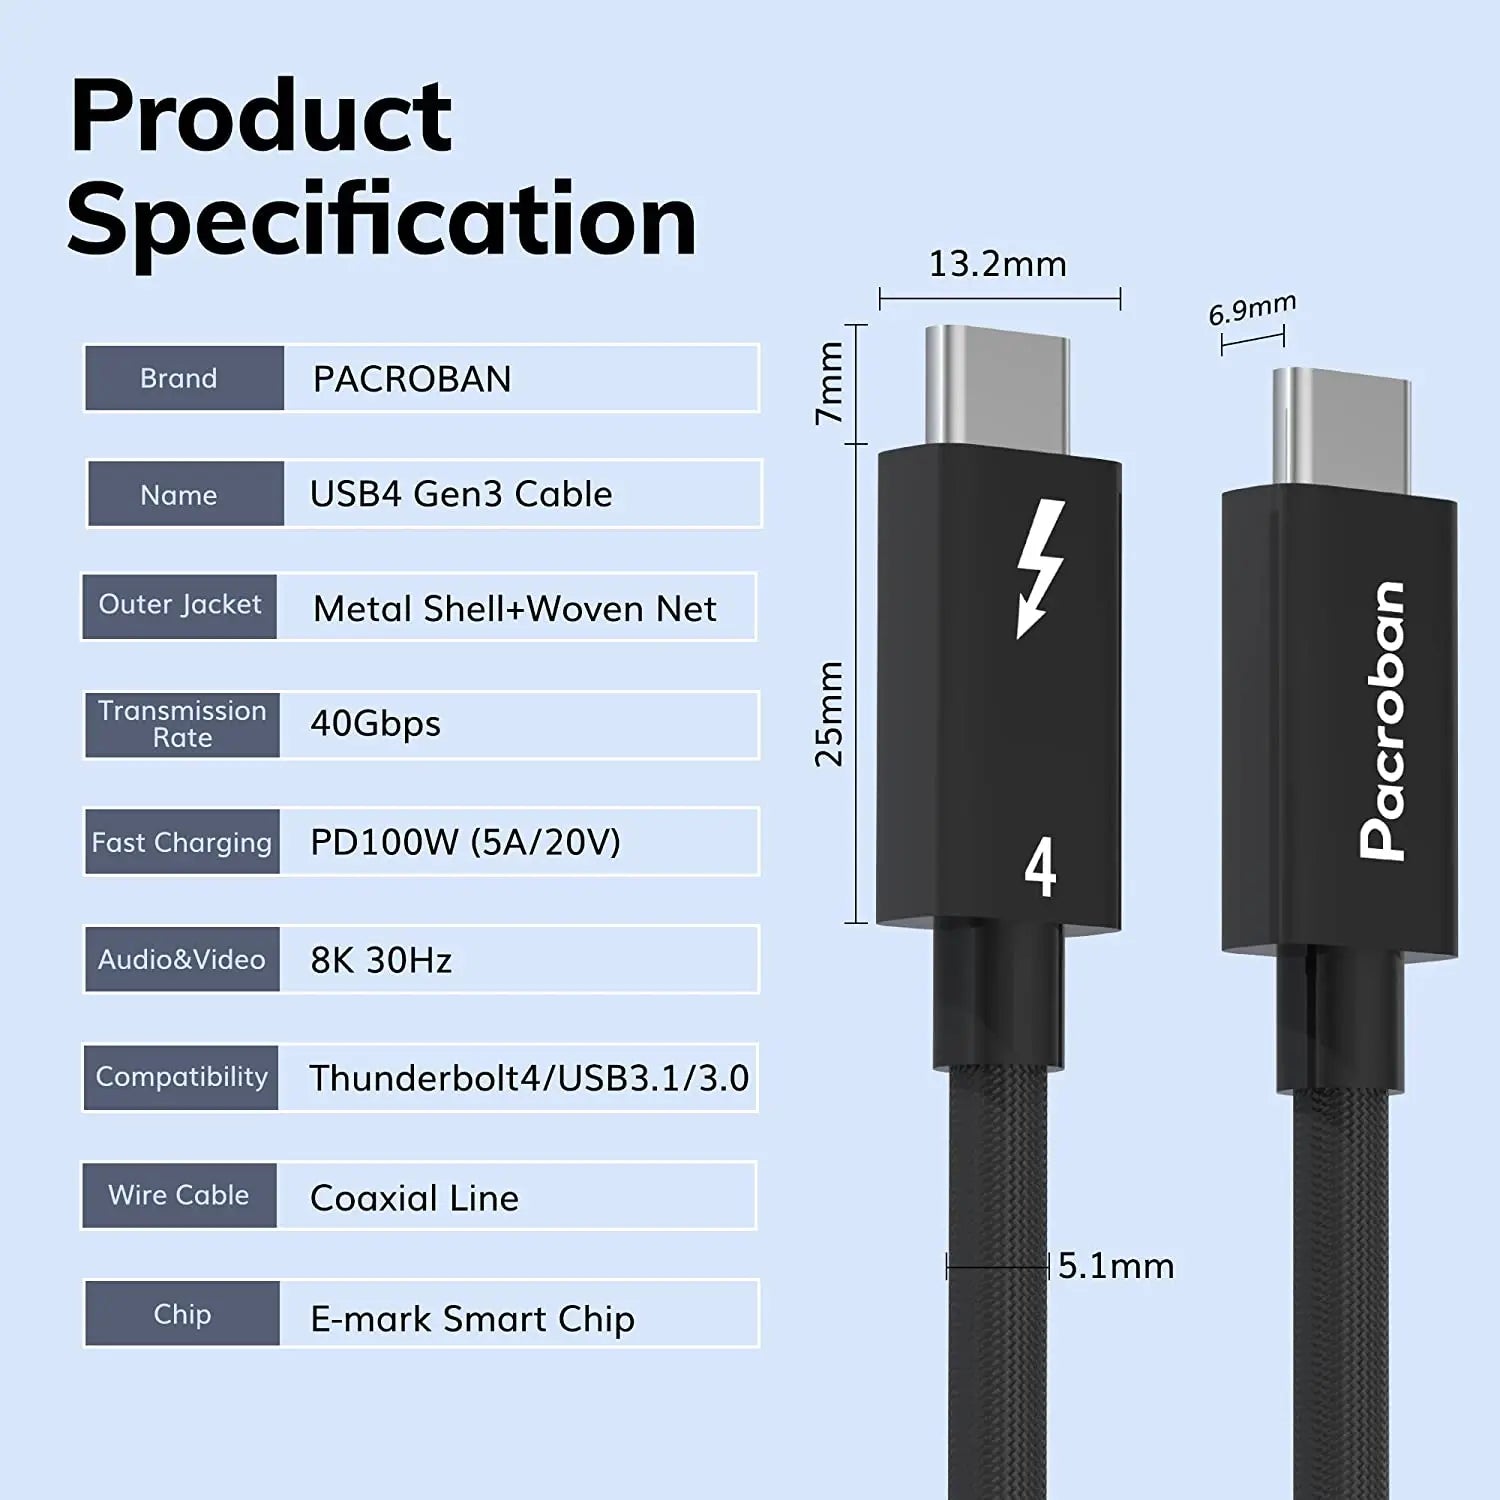 Câble USB / USB-C Nylon Tressé RAMPOW RAC-02 Gris/Noir - 2m